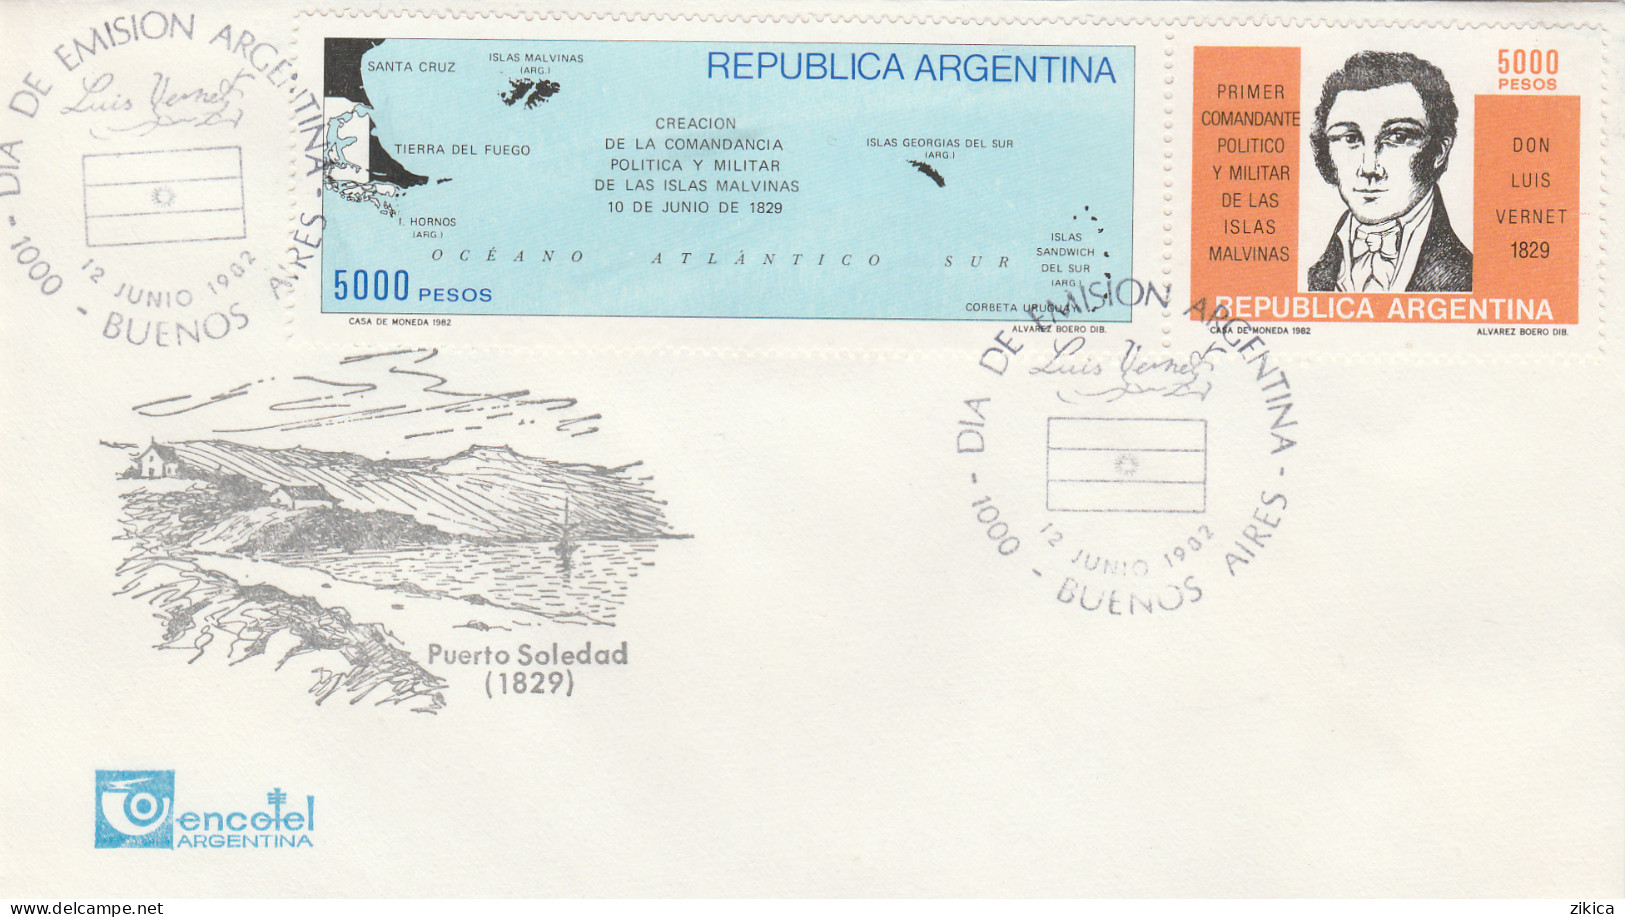 Argentina / Islas Malvinas / Falkland Islands / Antartica - 1982,cover - Storia Postale